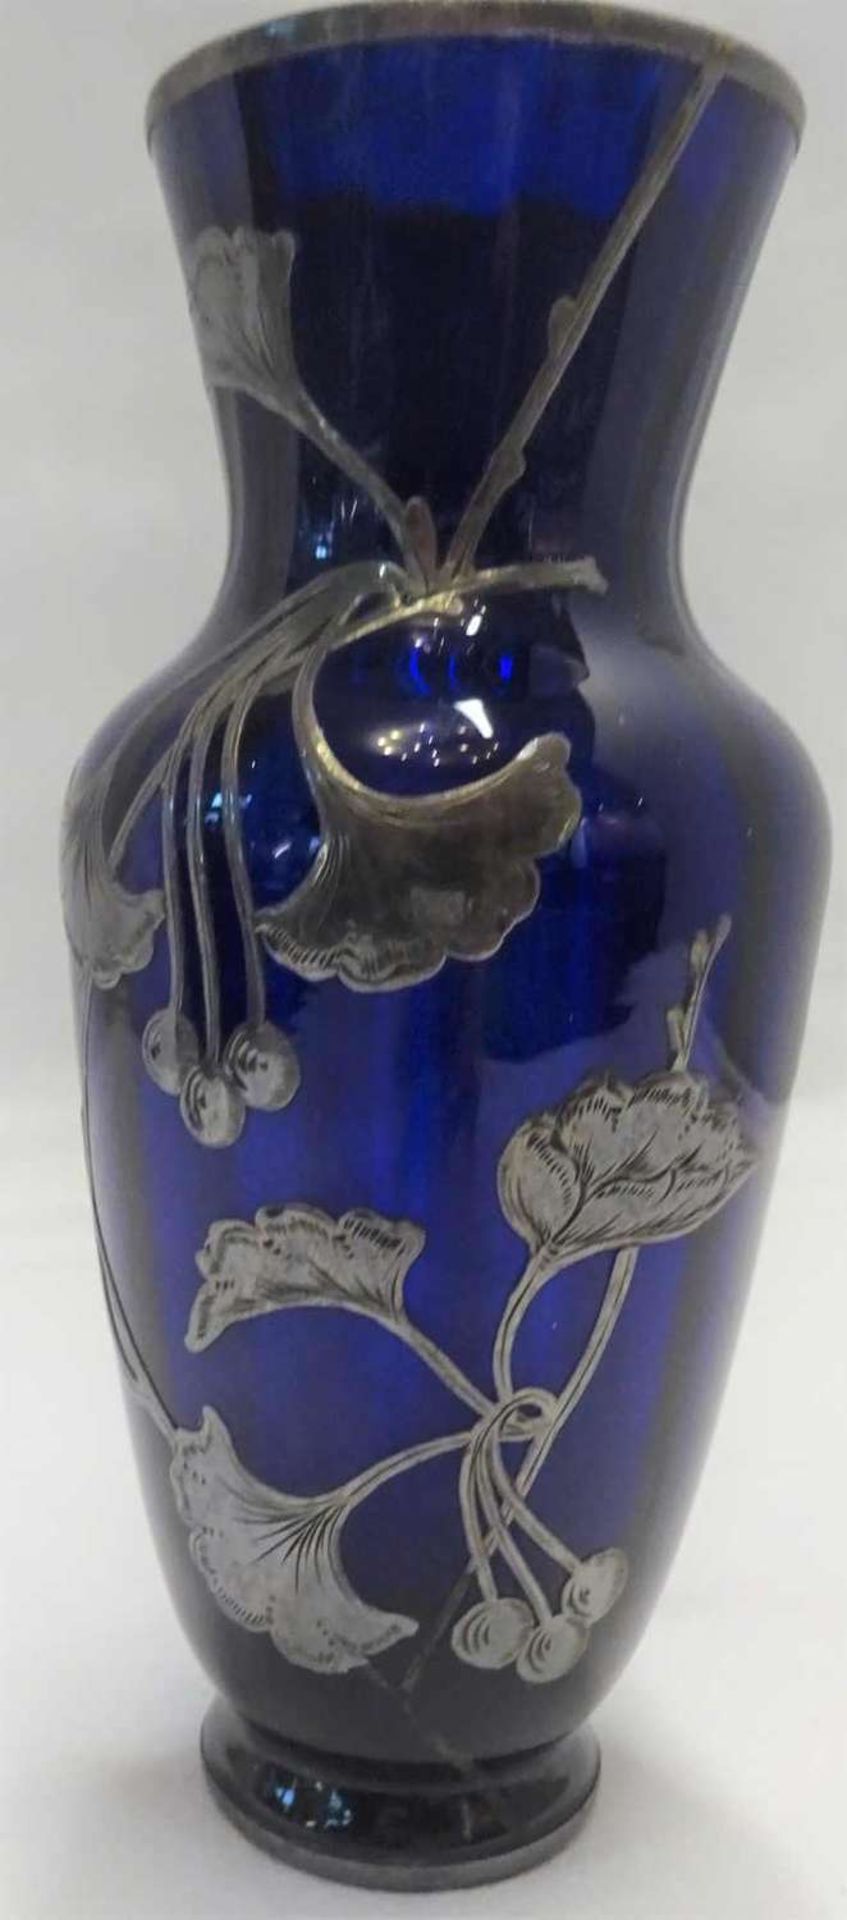 Blaue Jugendstil Glasvase mit Silberoverlay. Mundgeblasen, innen gerippt. Höhe ca. 14,5 cmBlue Art